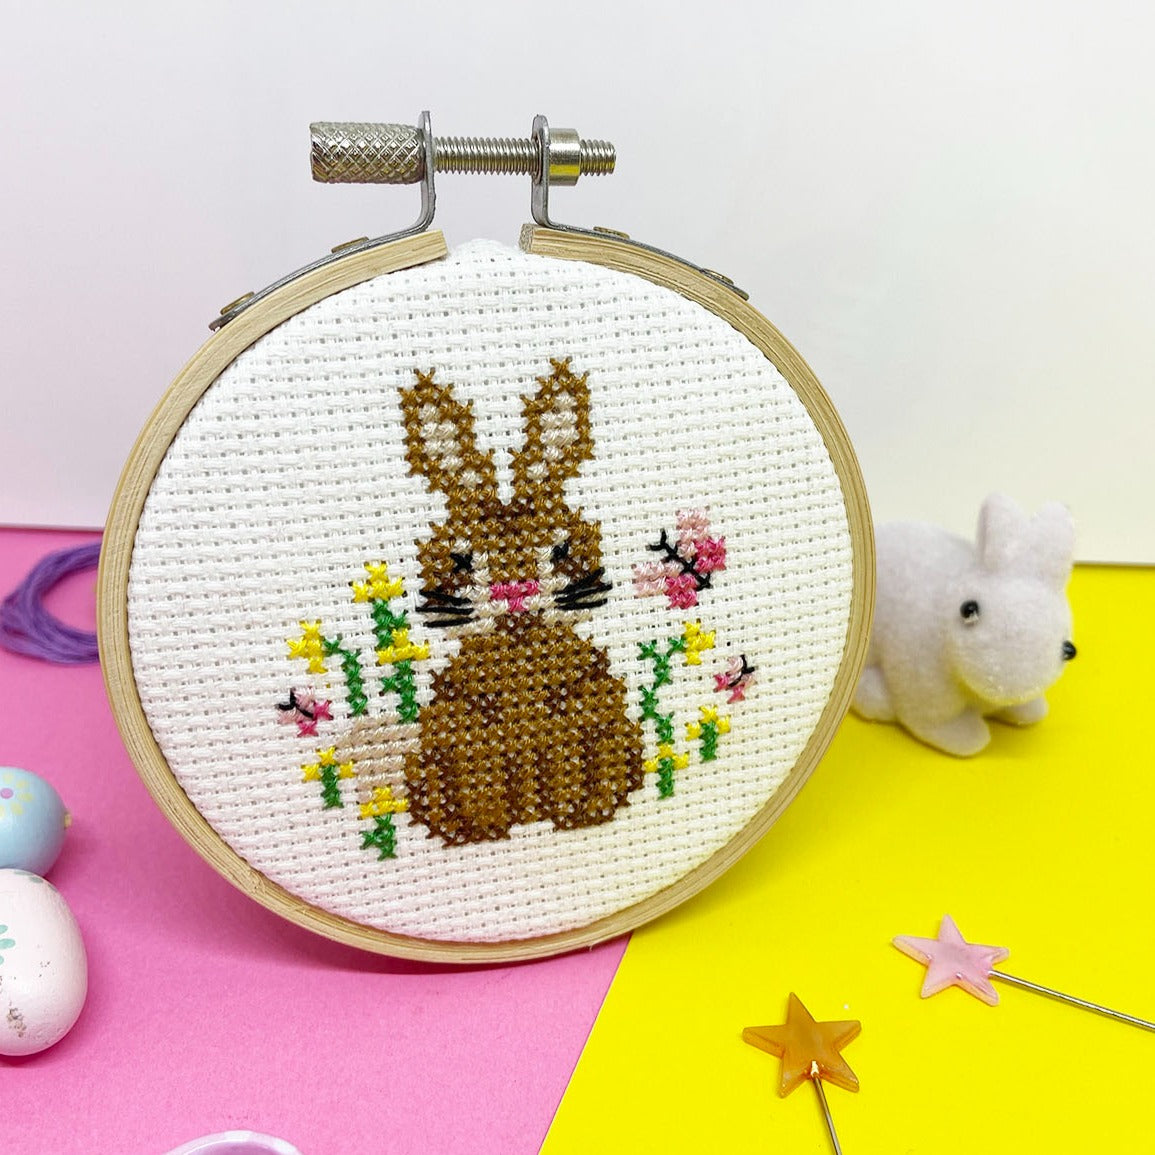 'Cute Bunny' Mini Cross Stitch Kit